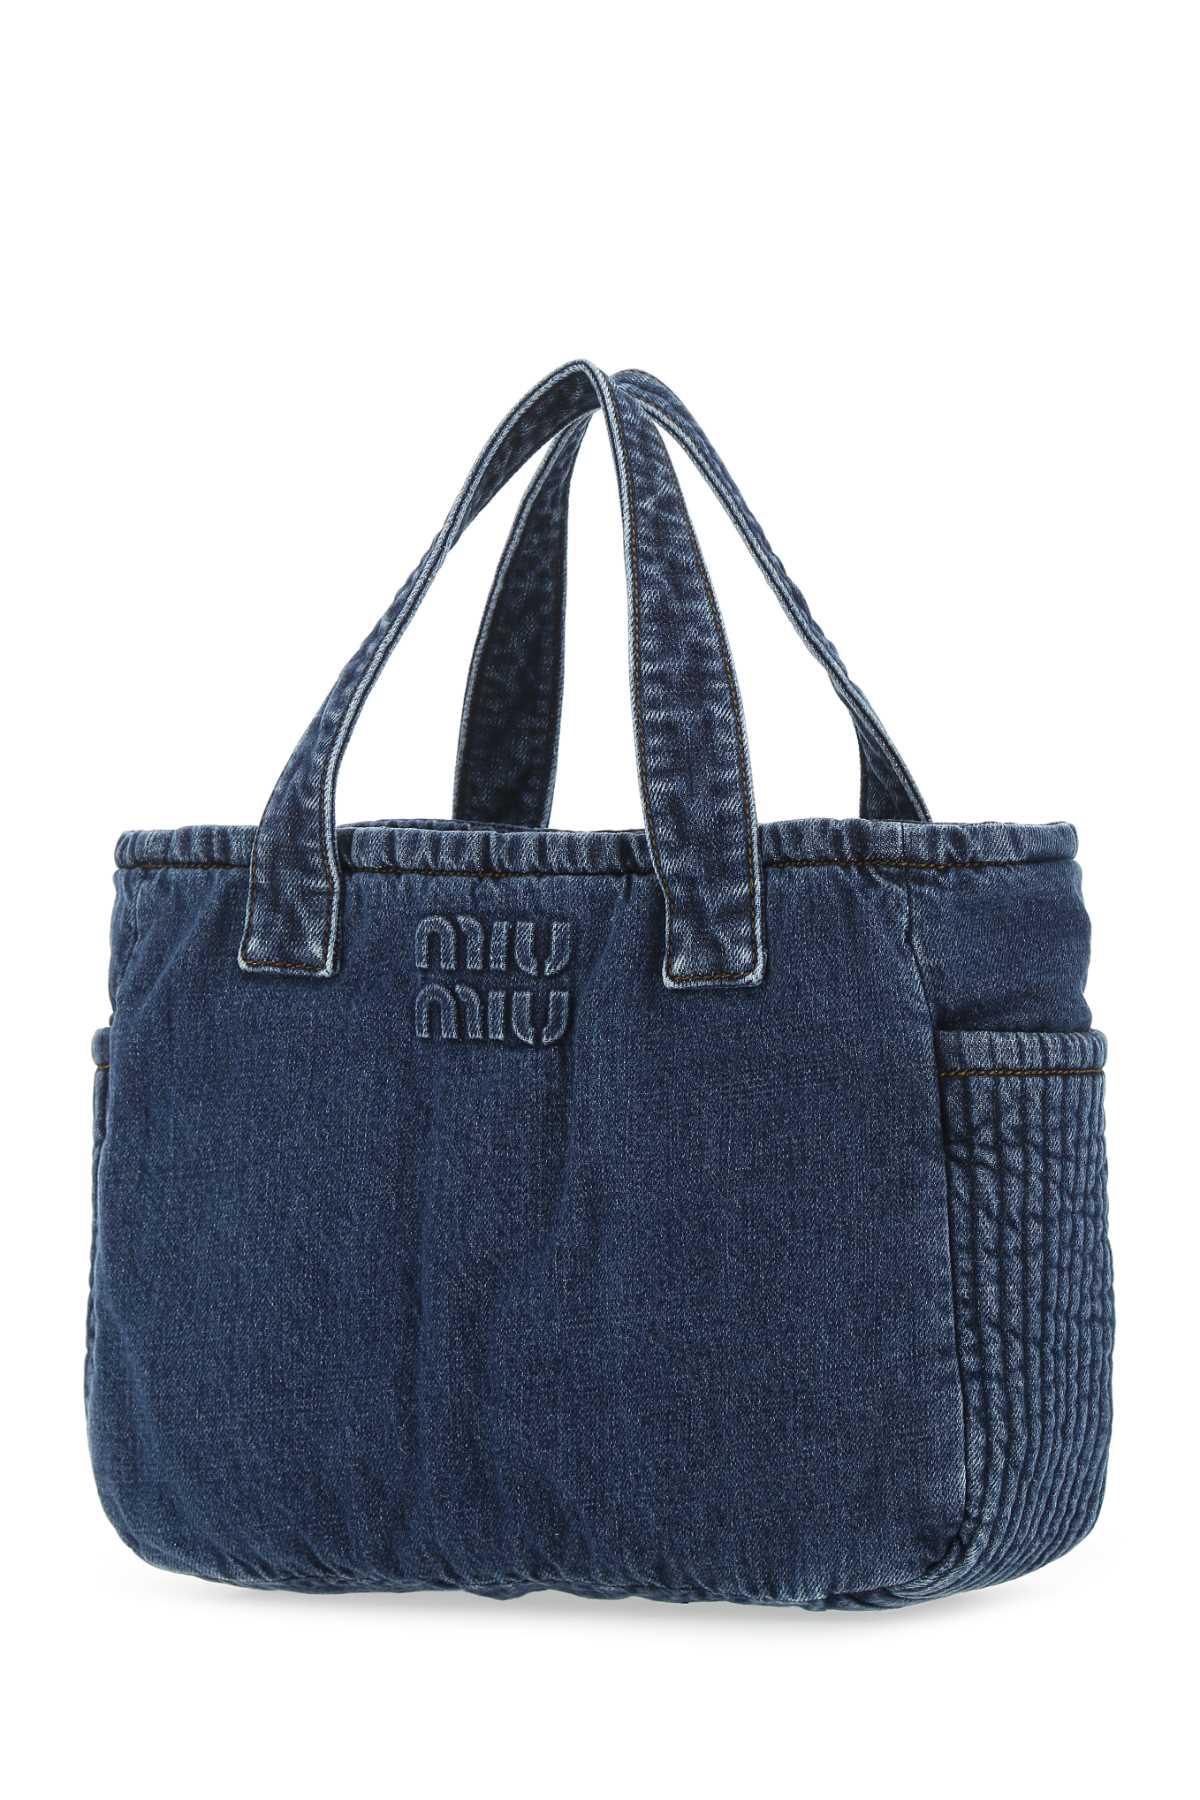 Miu Miu Montone Letter Tote Bag in Blue